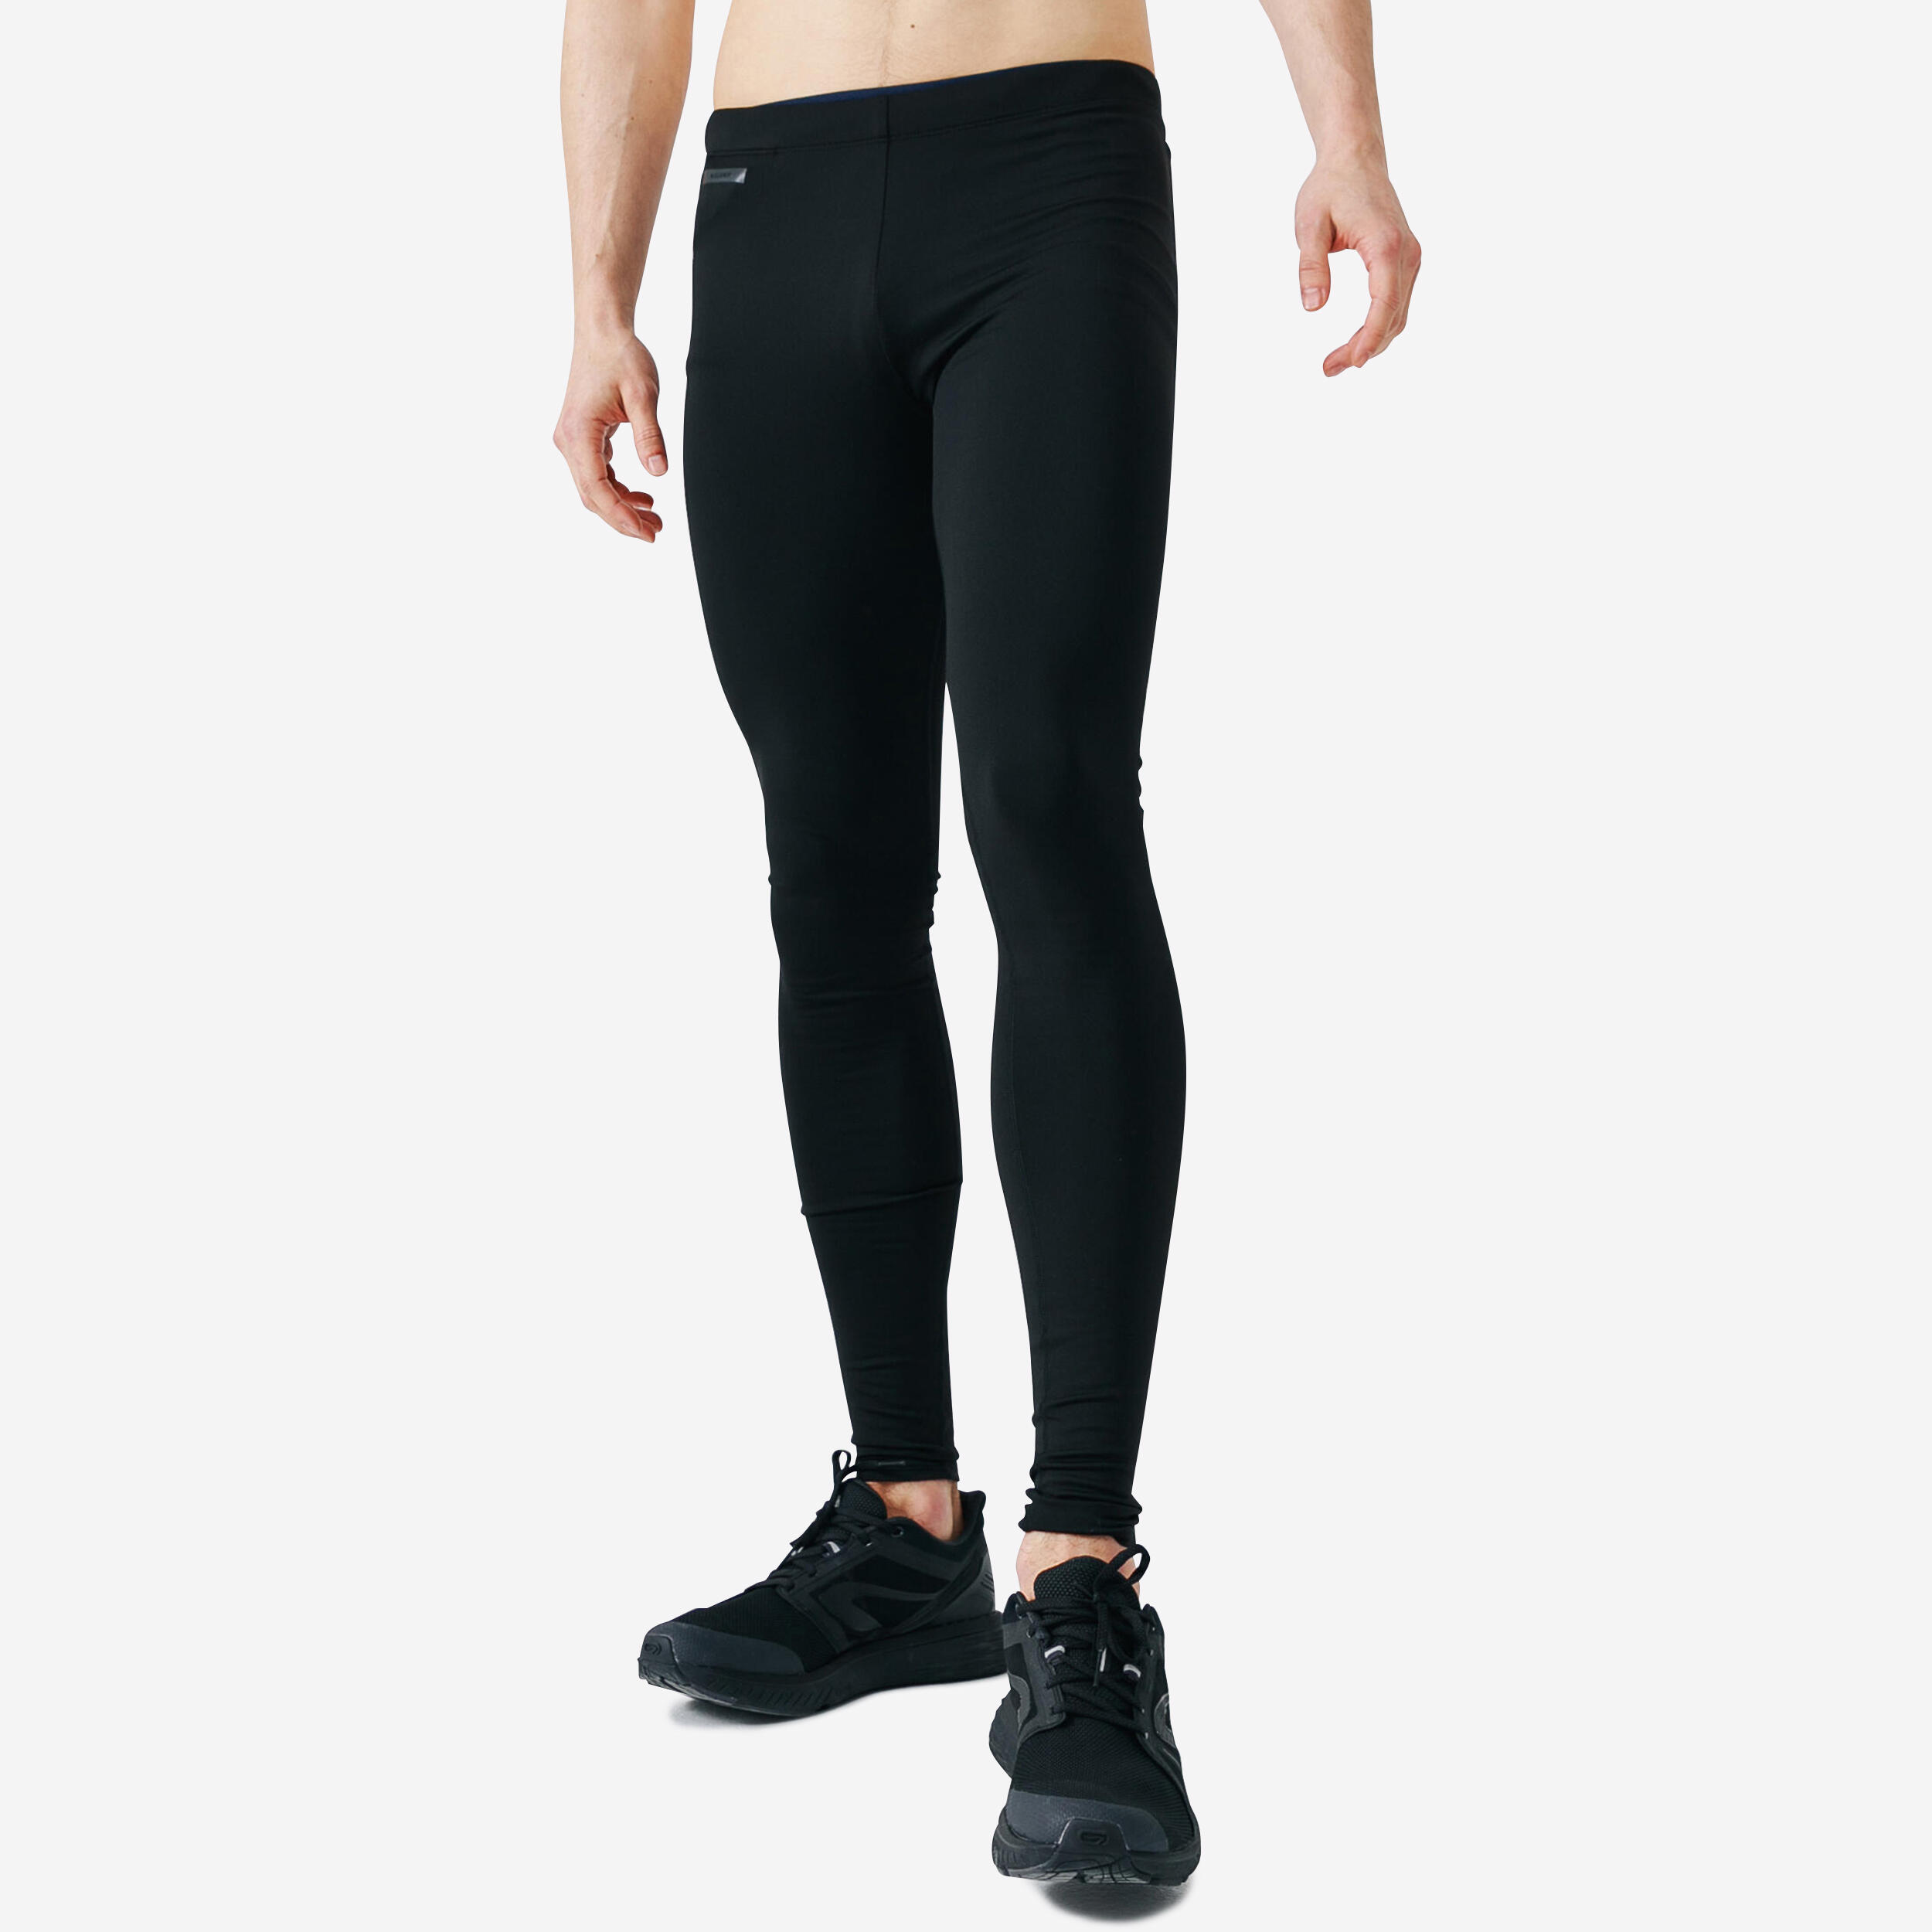 Buy Women's Warm Water Repellent Hiking Trousers Online | Decathlon